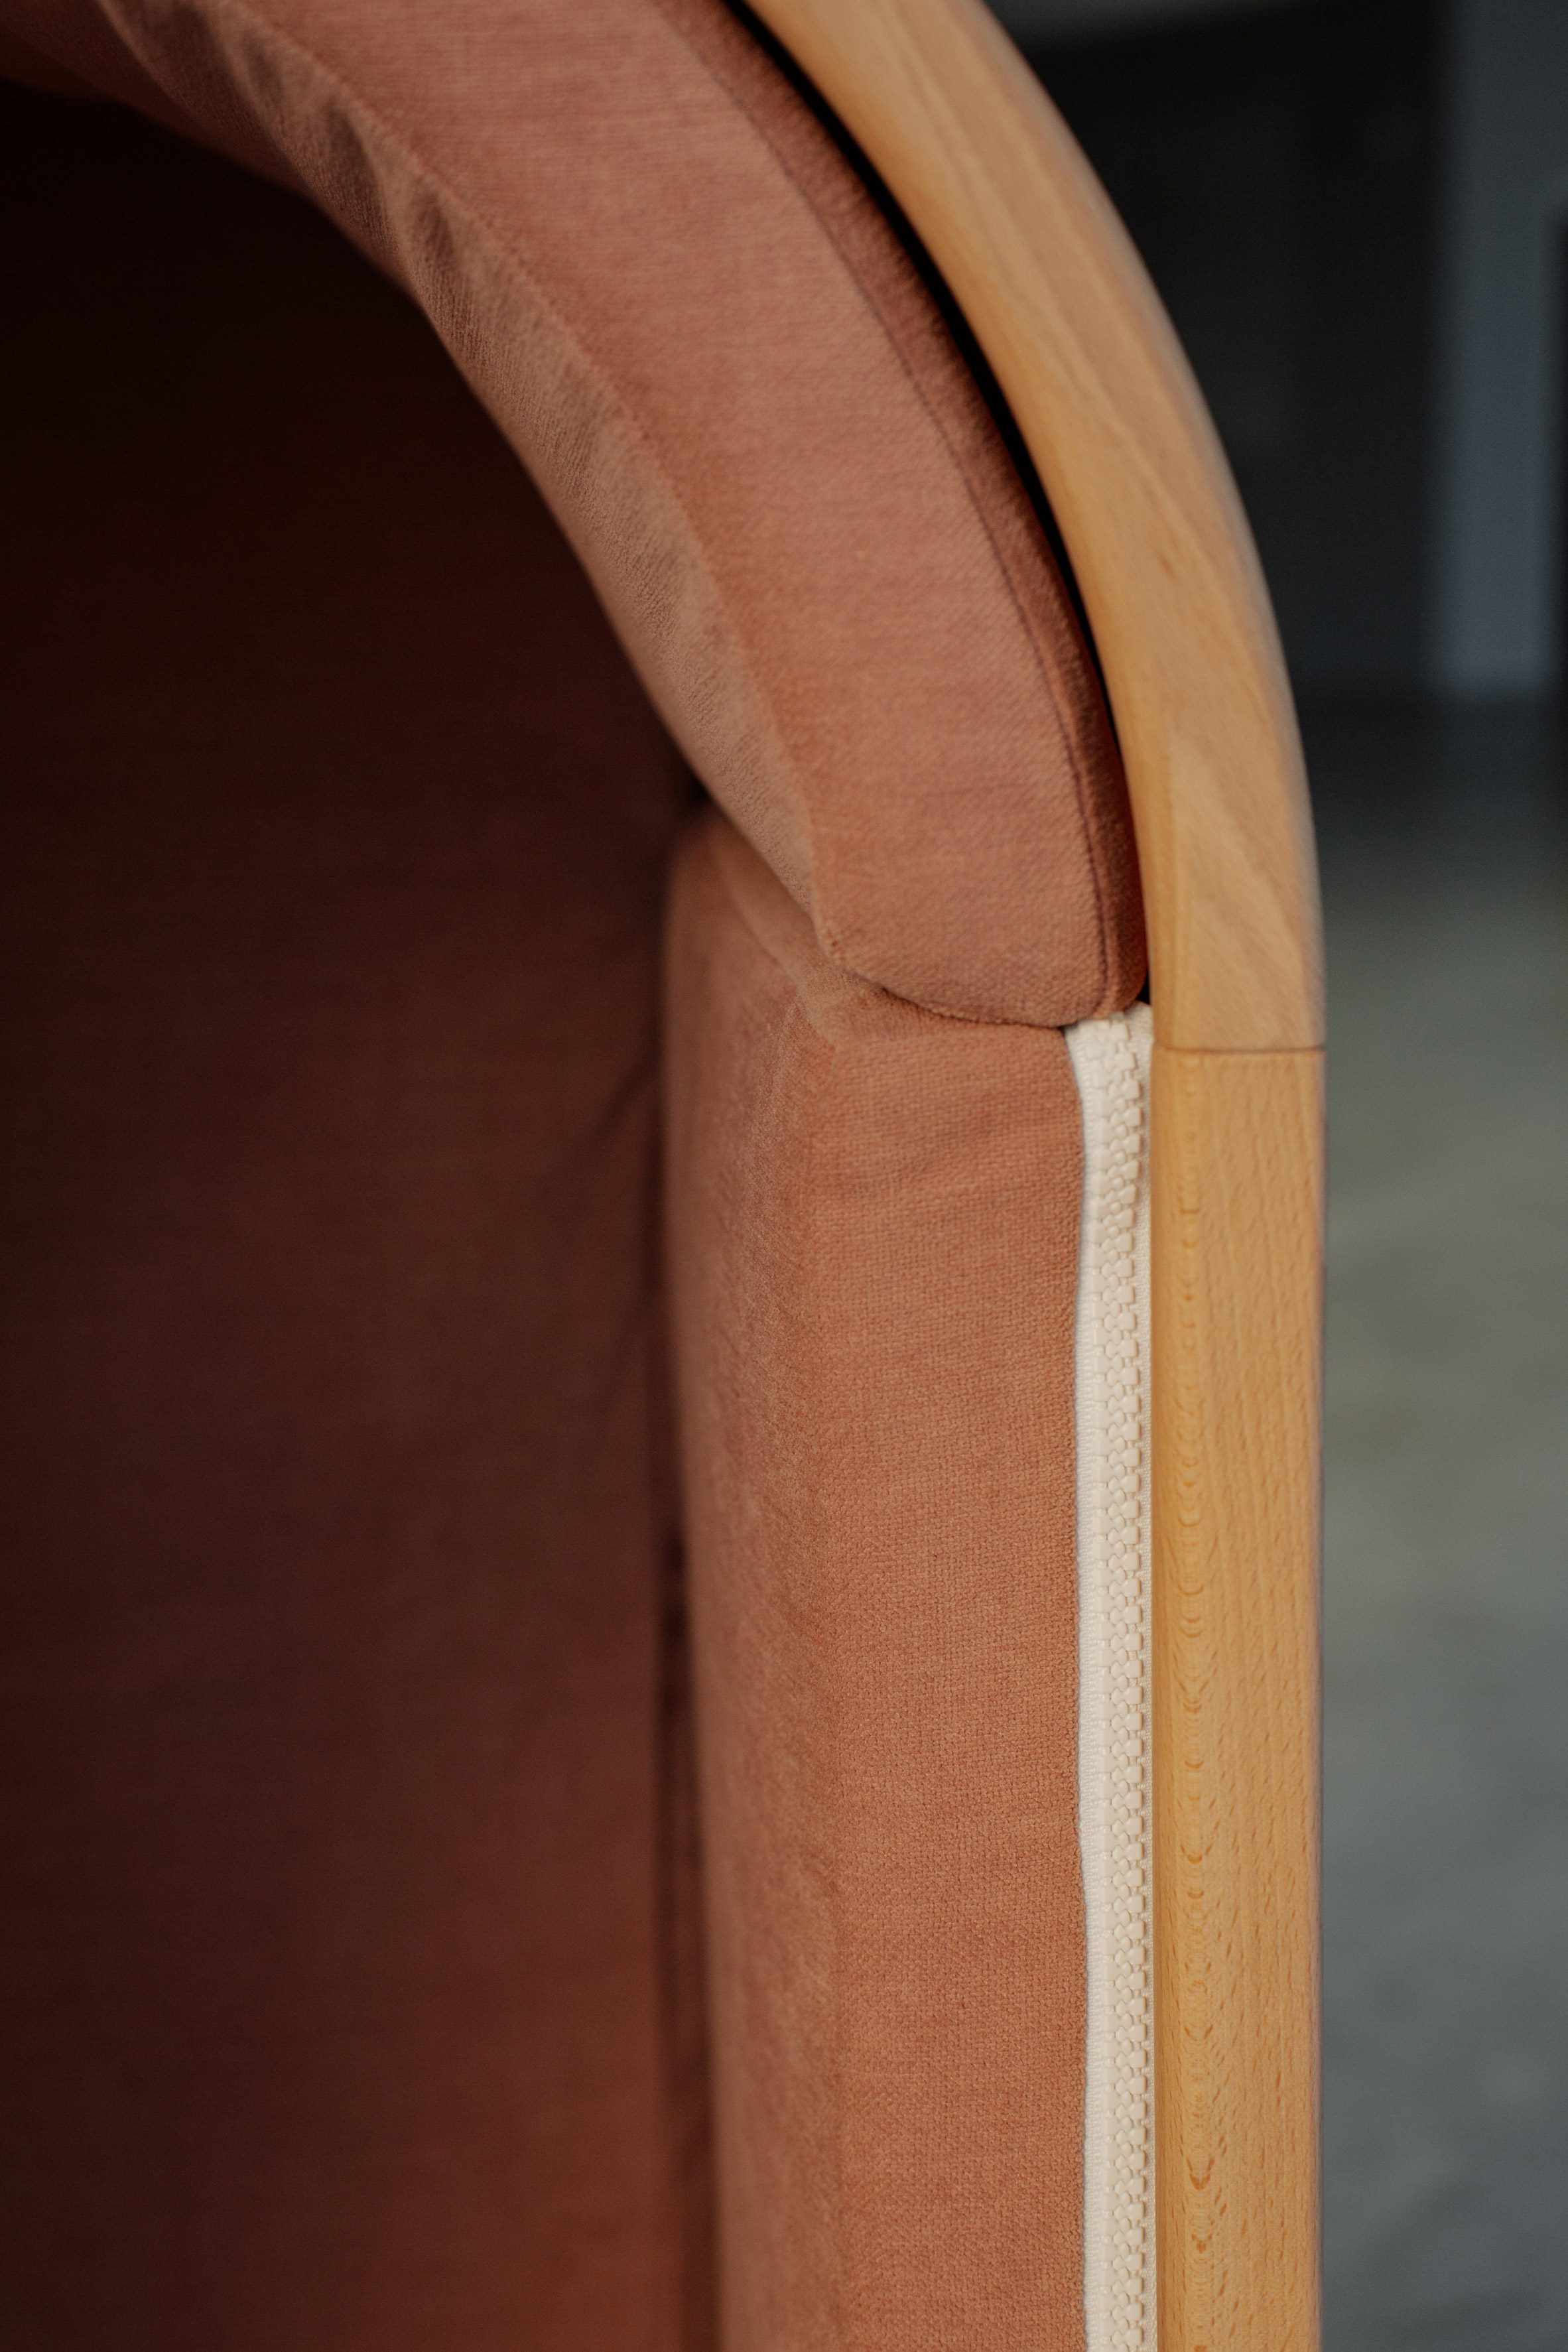 Ritsleting di sisi kursi kayu oleh Alexia Audrain